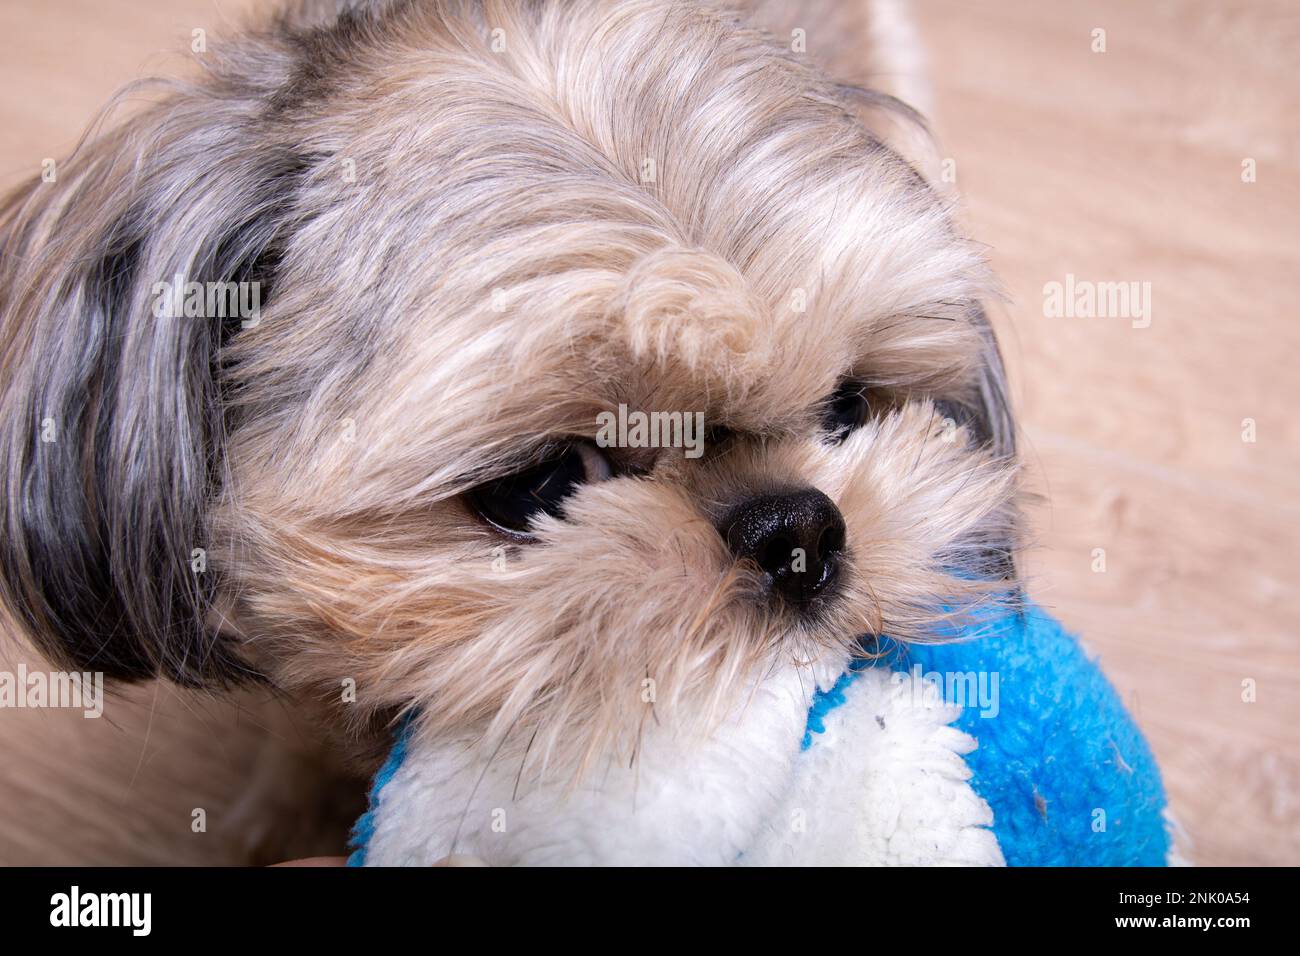 Foto Shih Tzu, un piccolo cane di razza, sta tenendo un giocattolo nei suoi denti Foto Stock